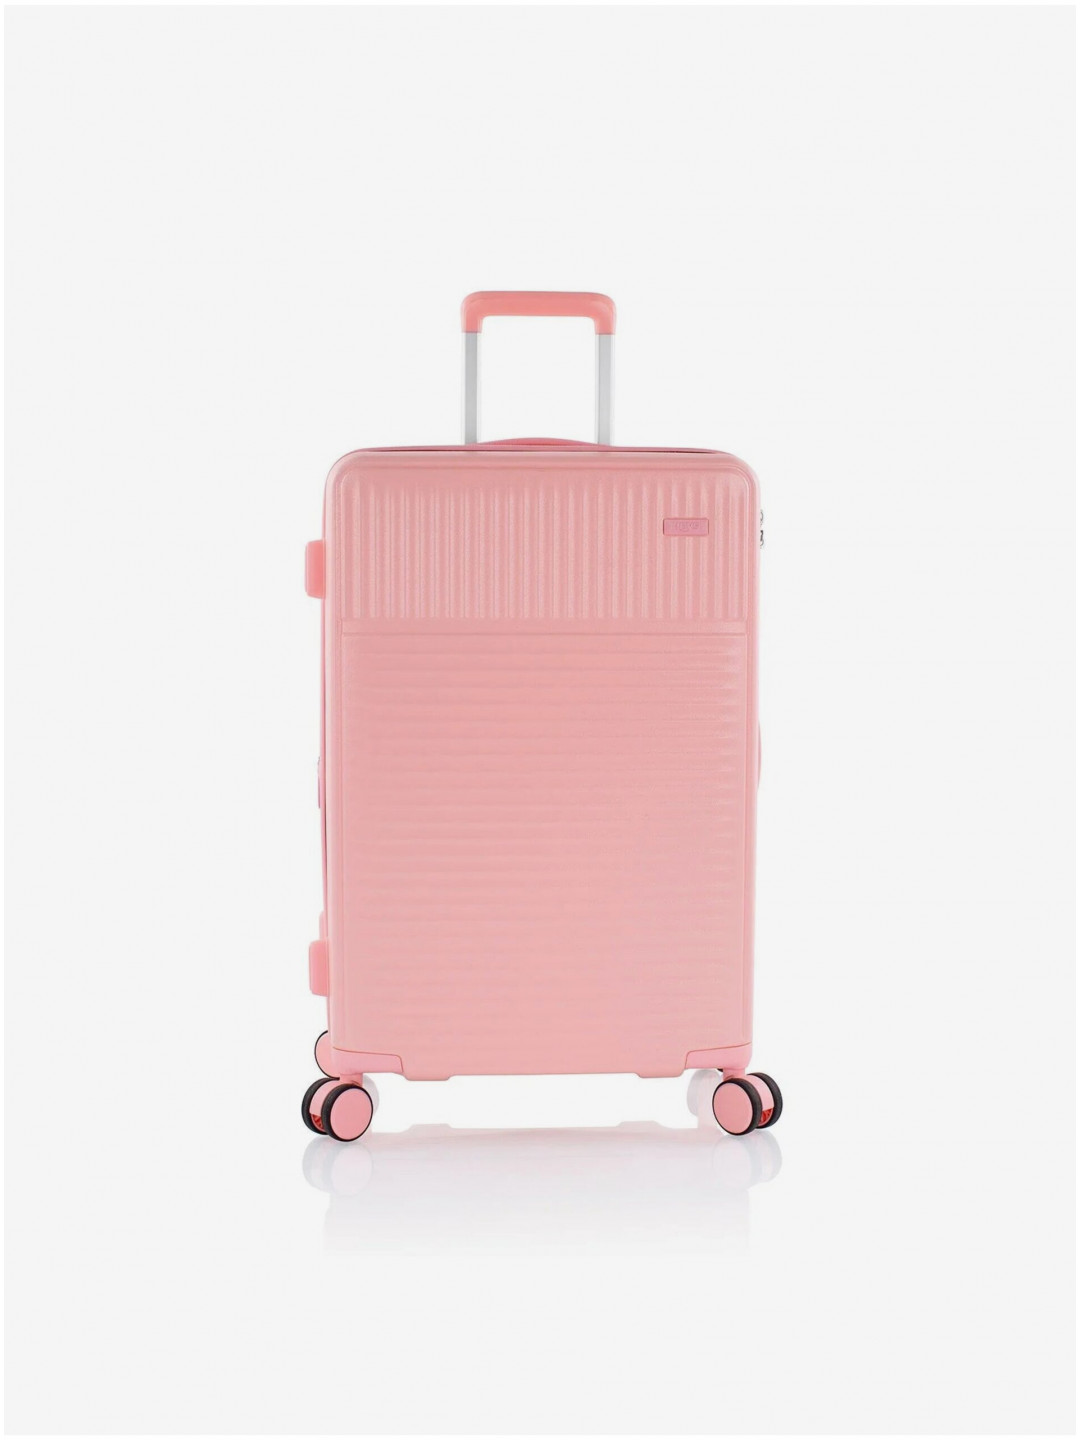 Růžový cestovní kufr Heys Pastel M